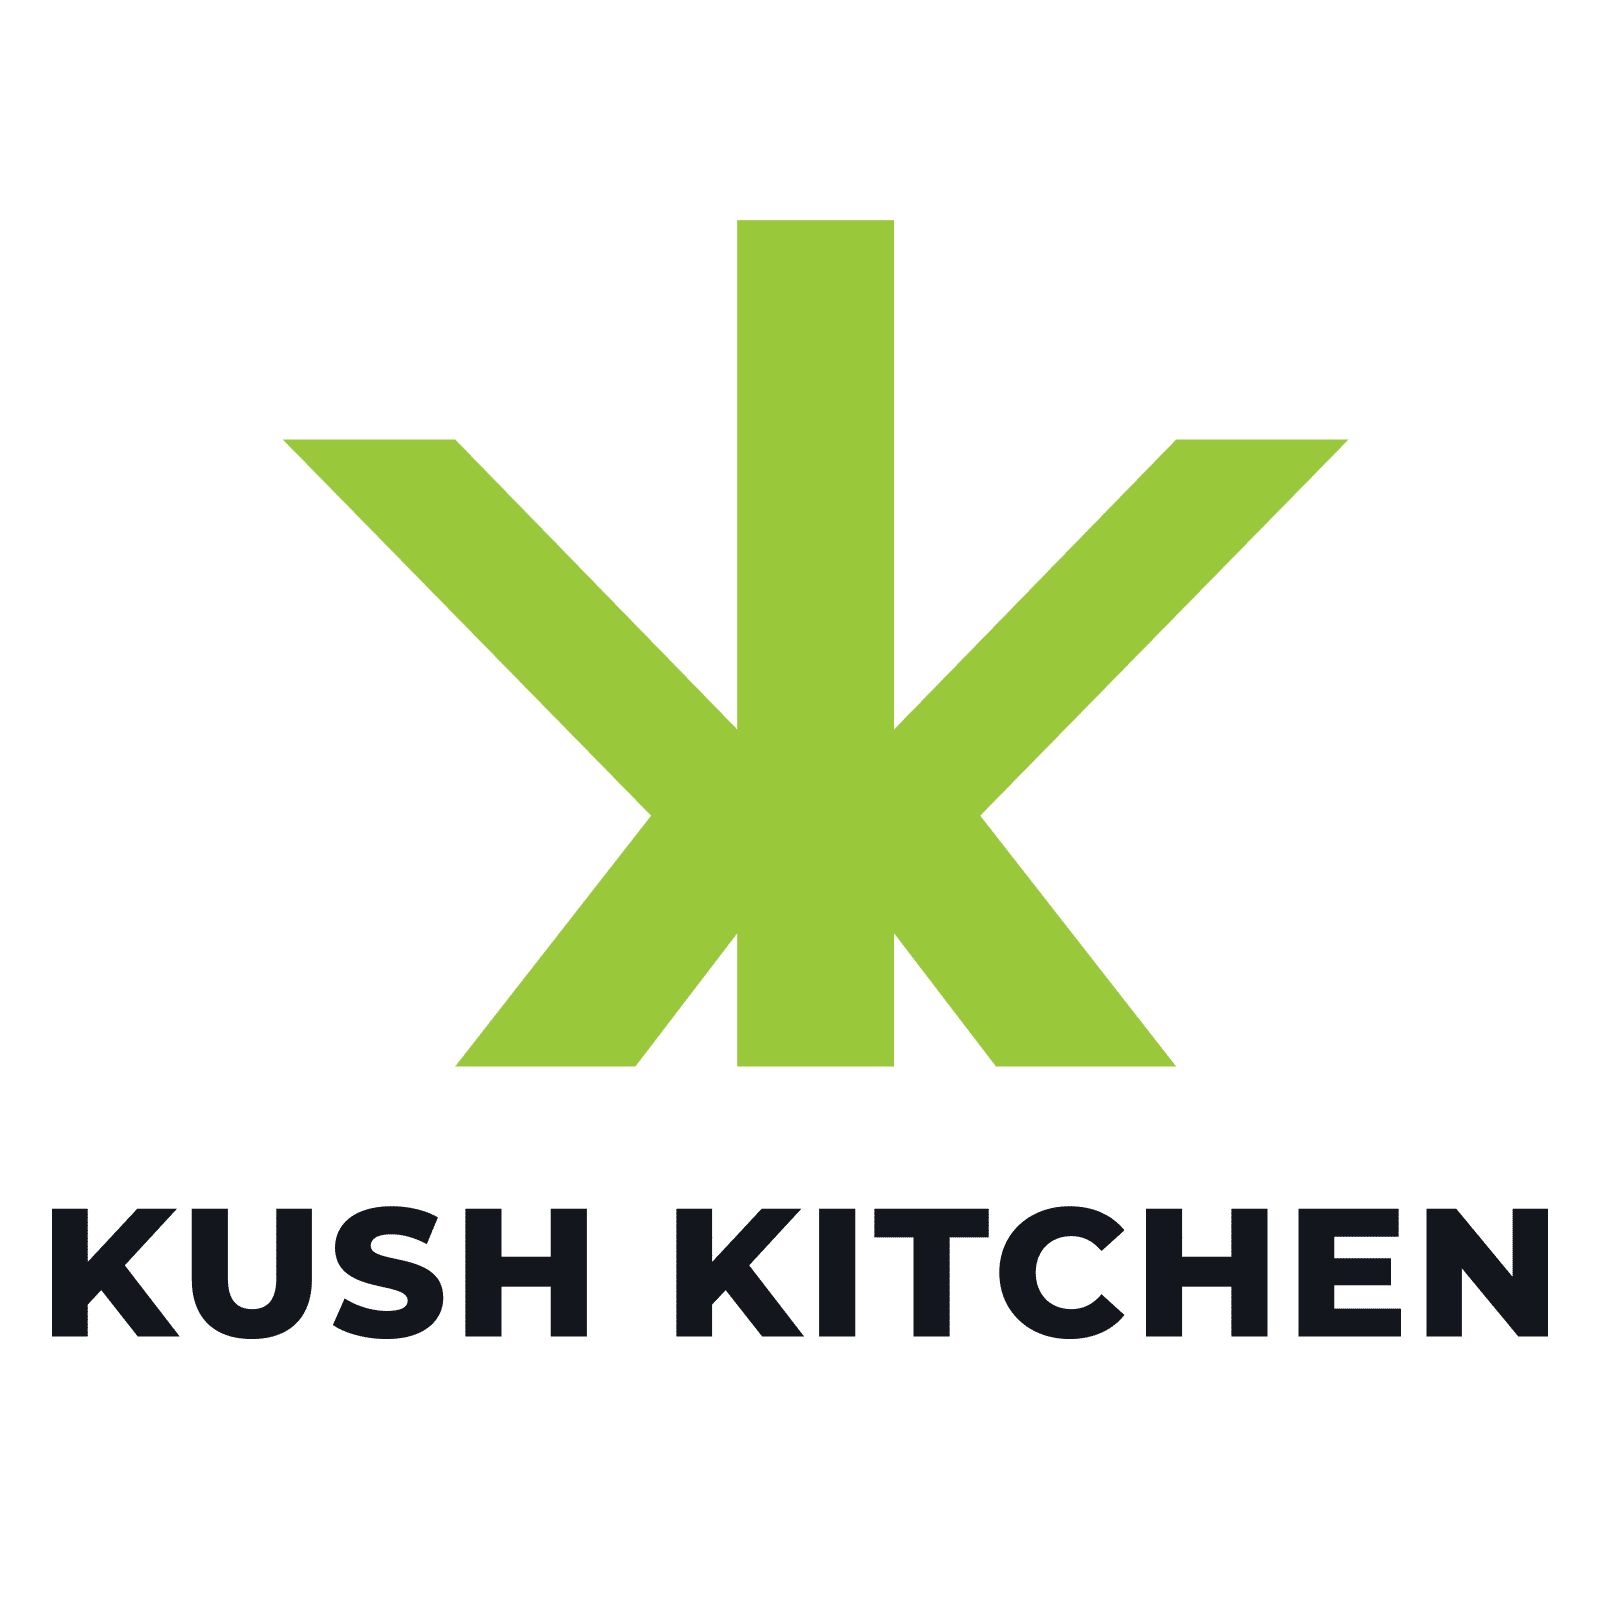 Kush Kitchen